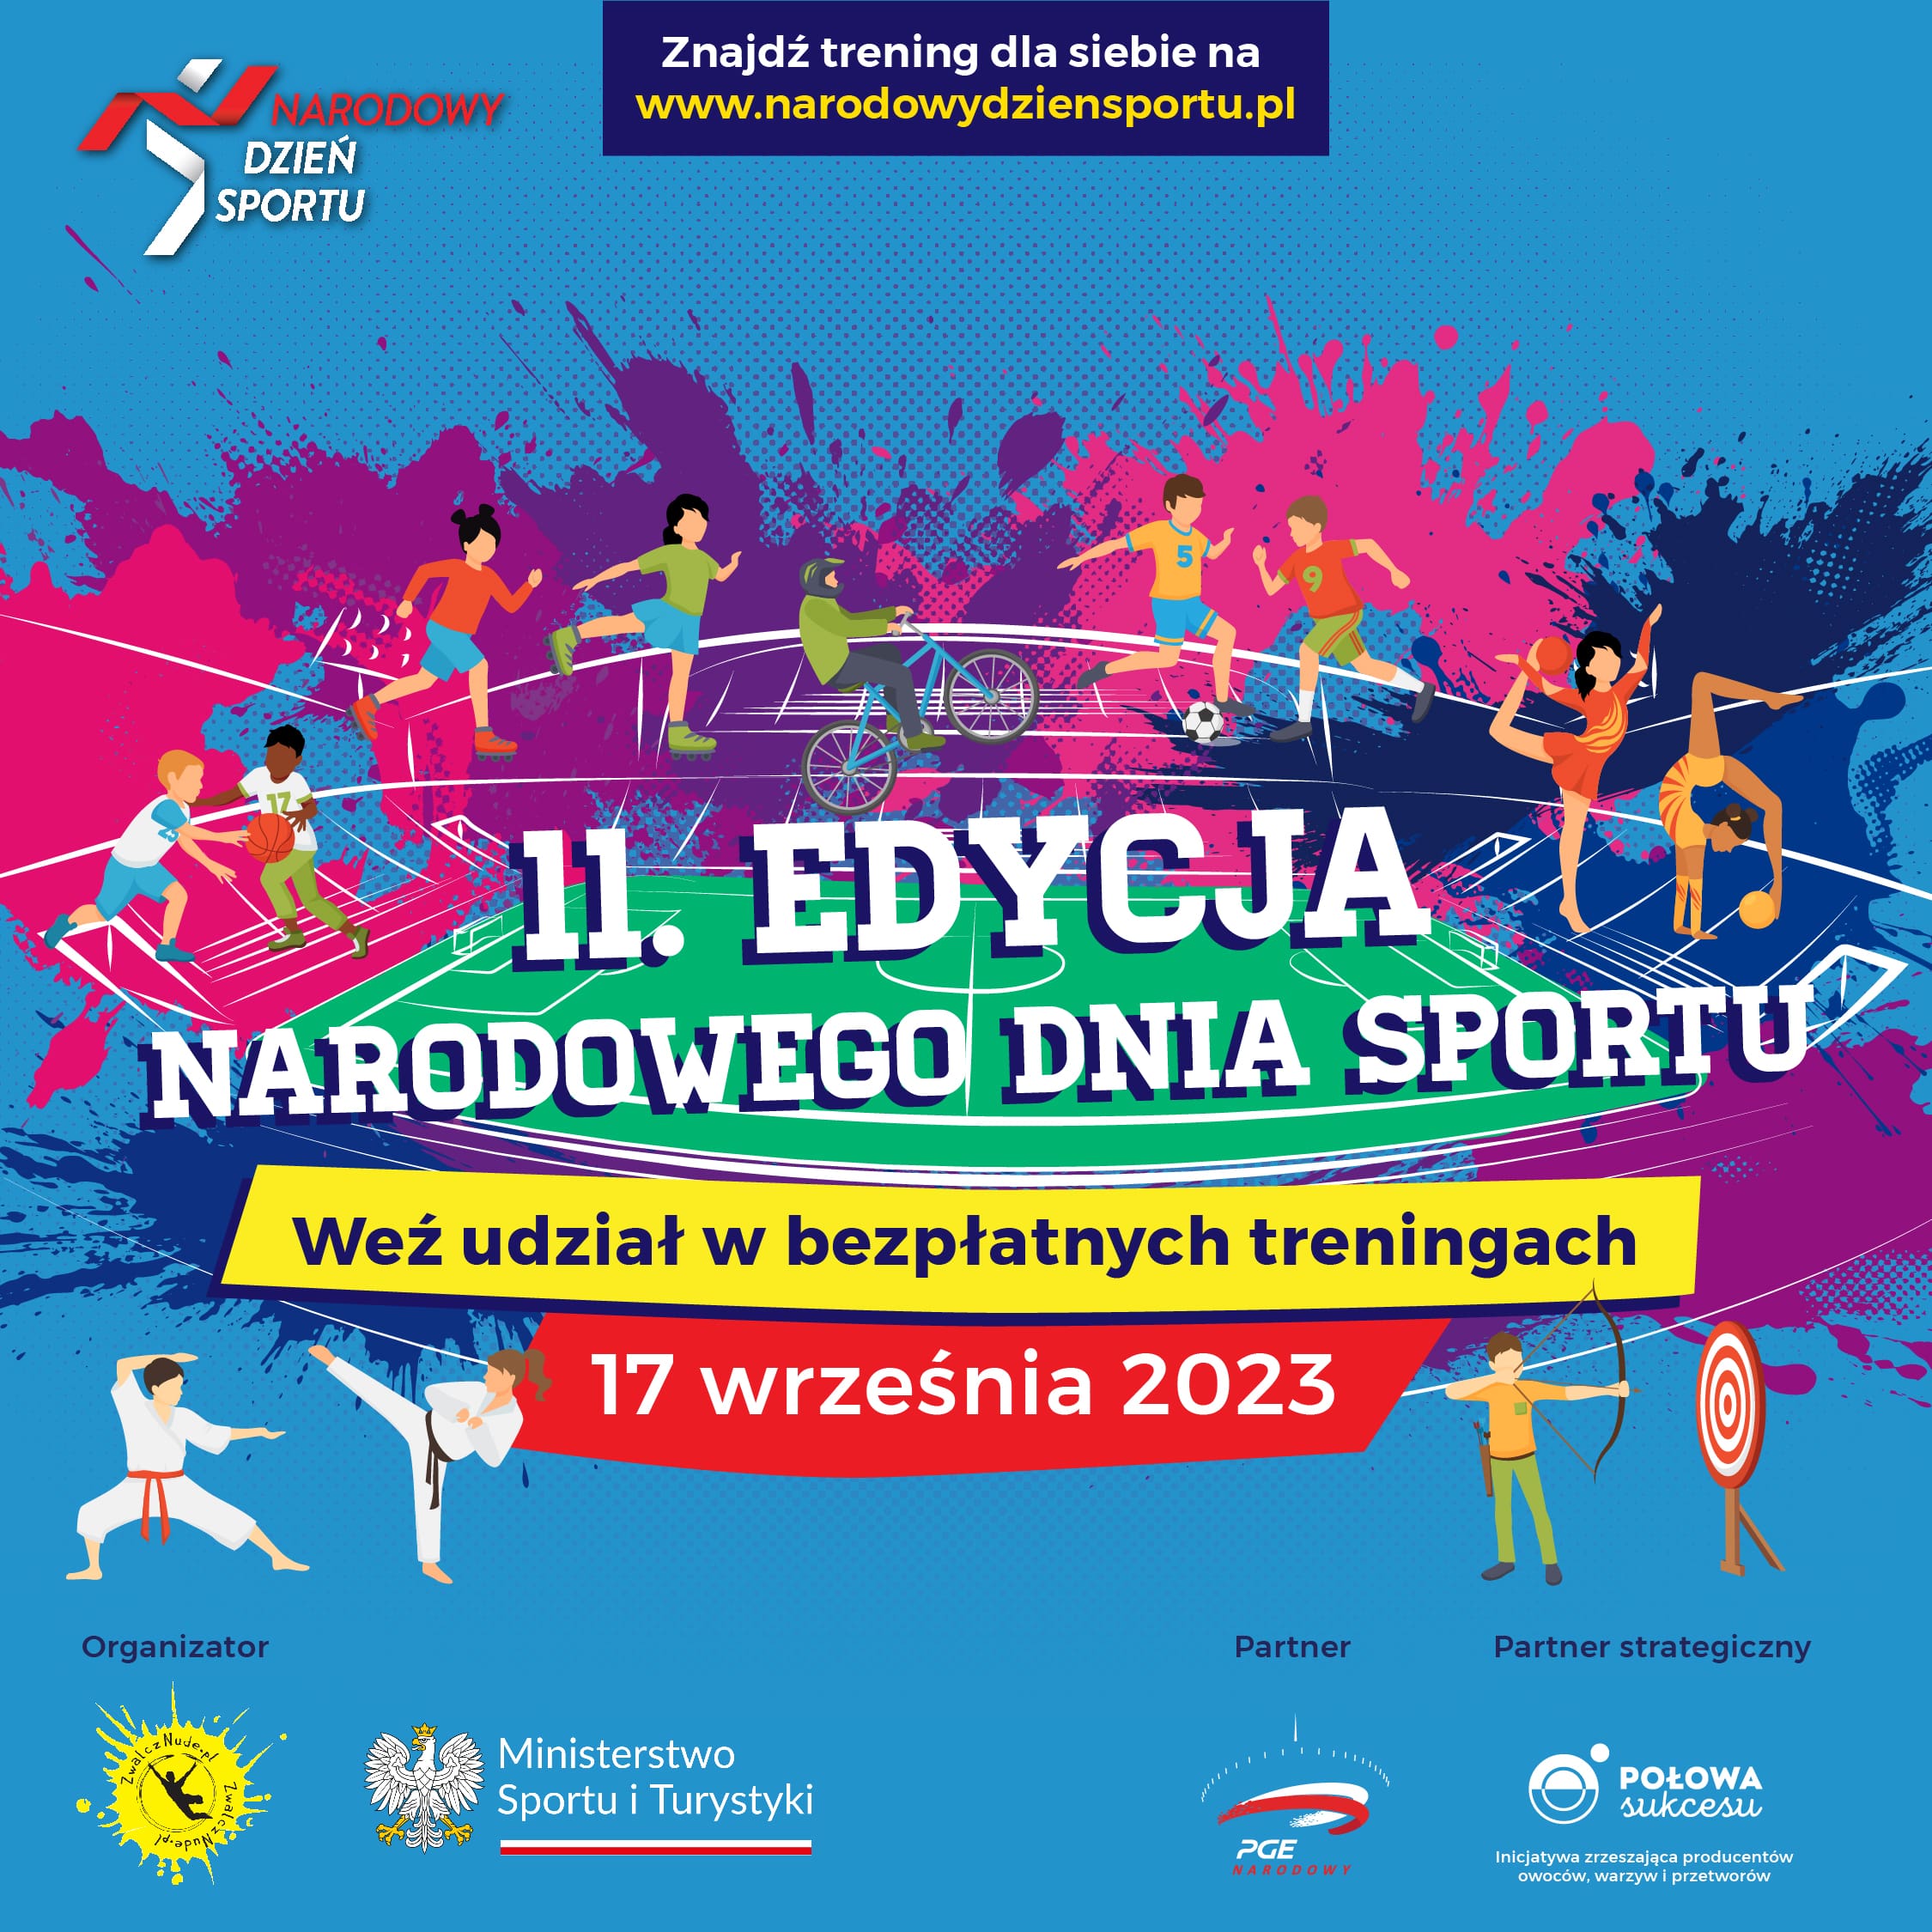 Narodowy Dzień Sportu 2023